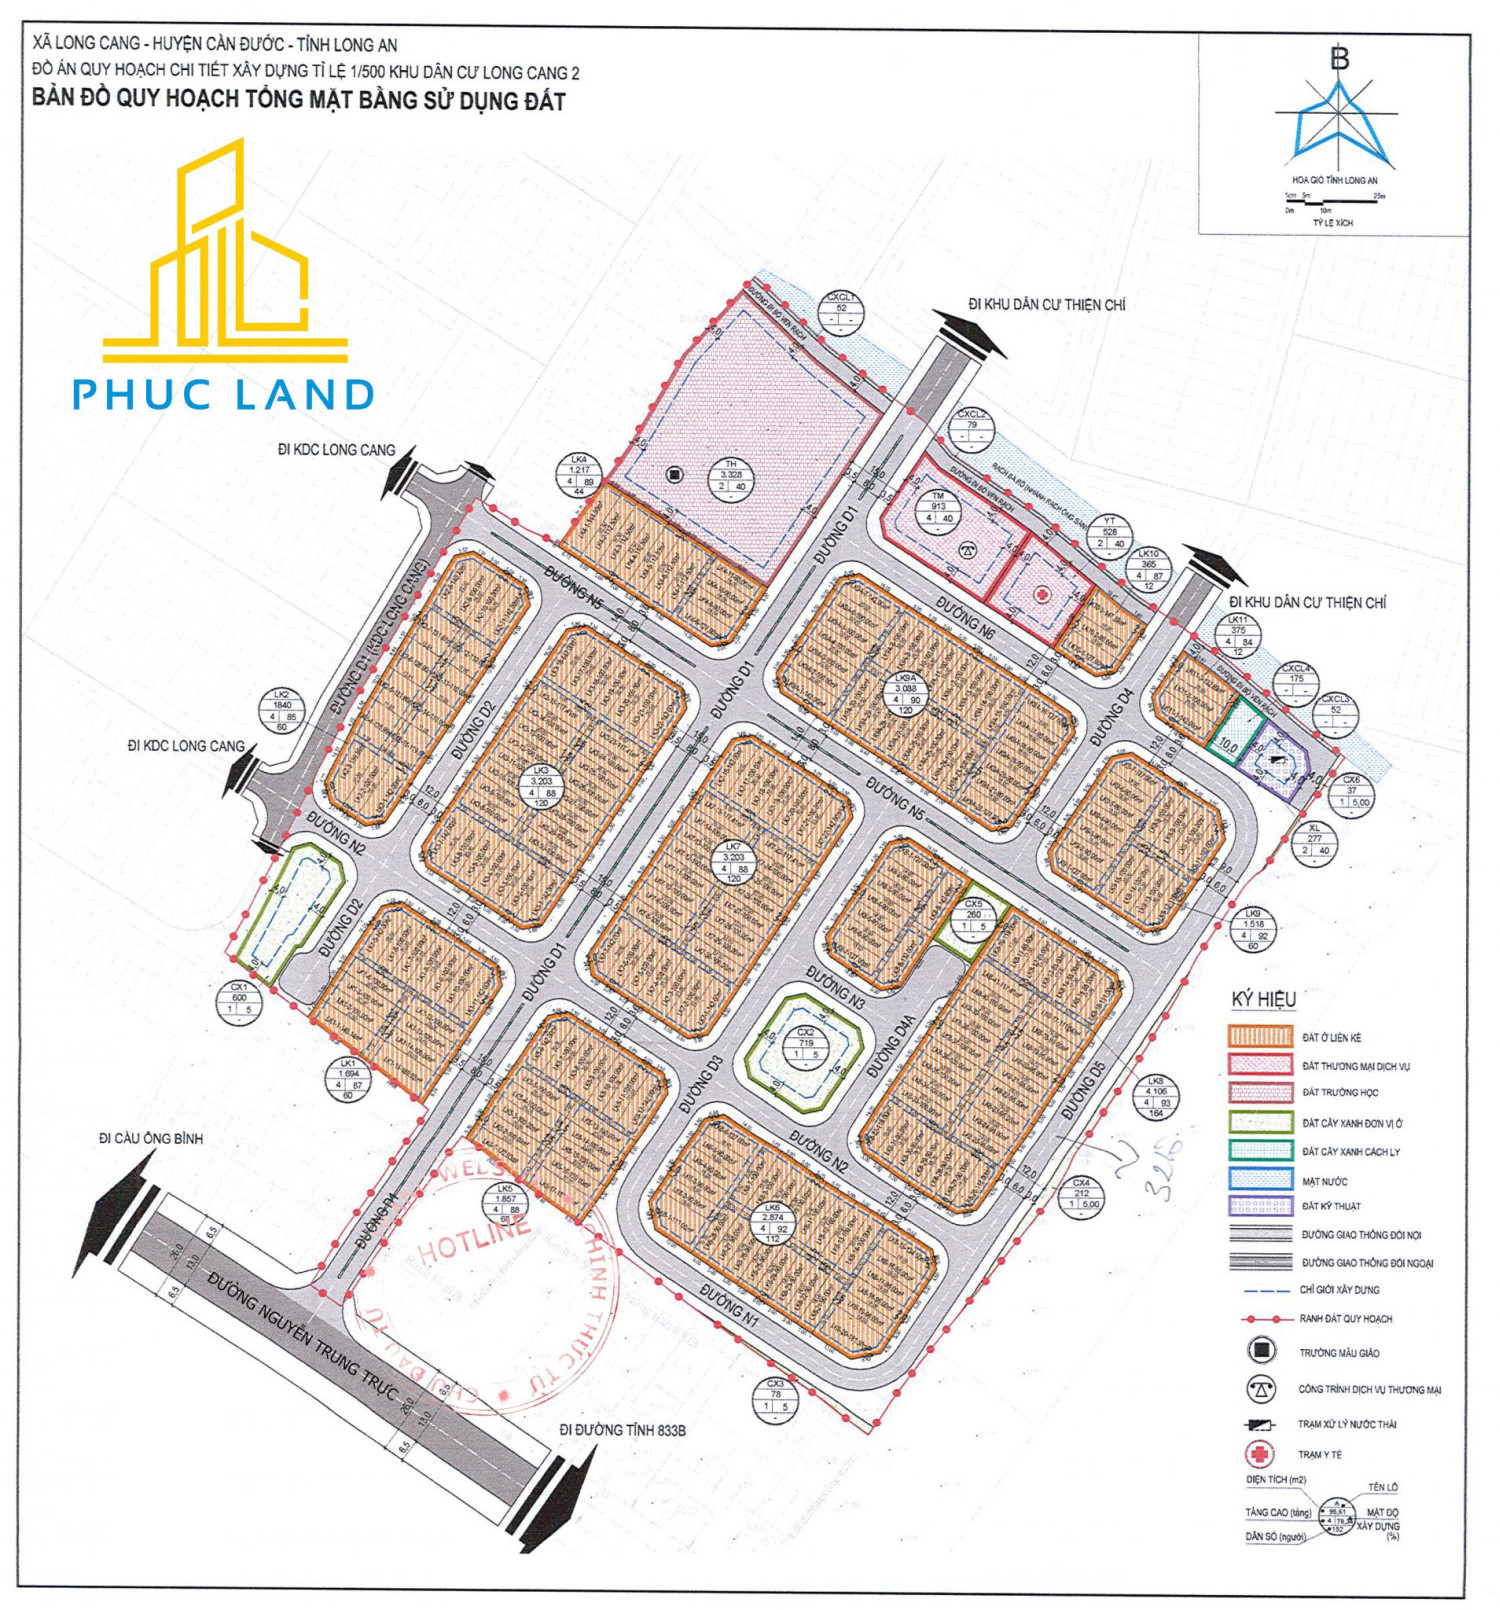  Bản đồ quy hoạch của Long Cang New